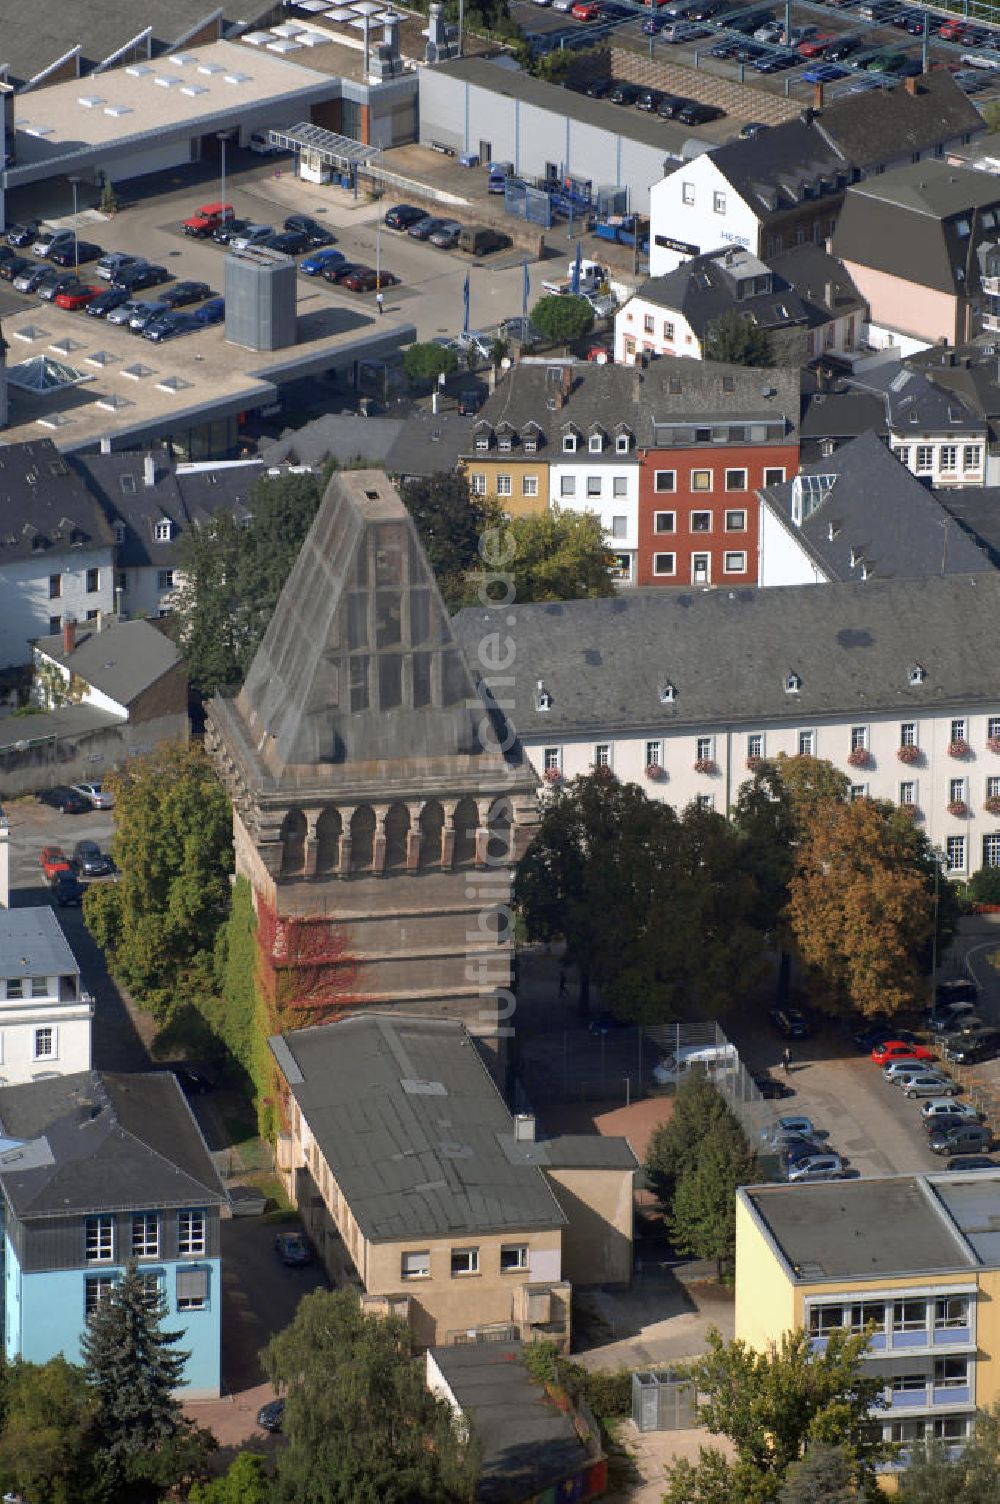 Trier aus der Vogelperspektive: Blick auf den Augustinerhof mit dem unvollendeten Hochbunker in Trier